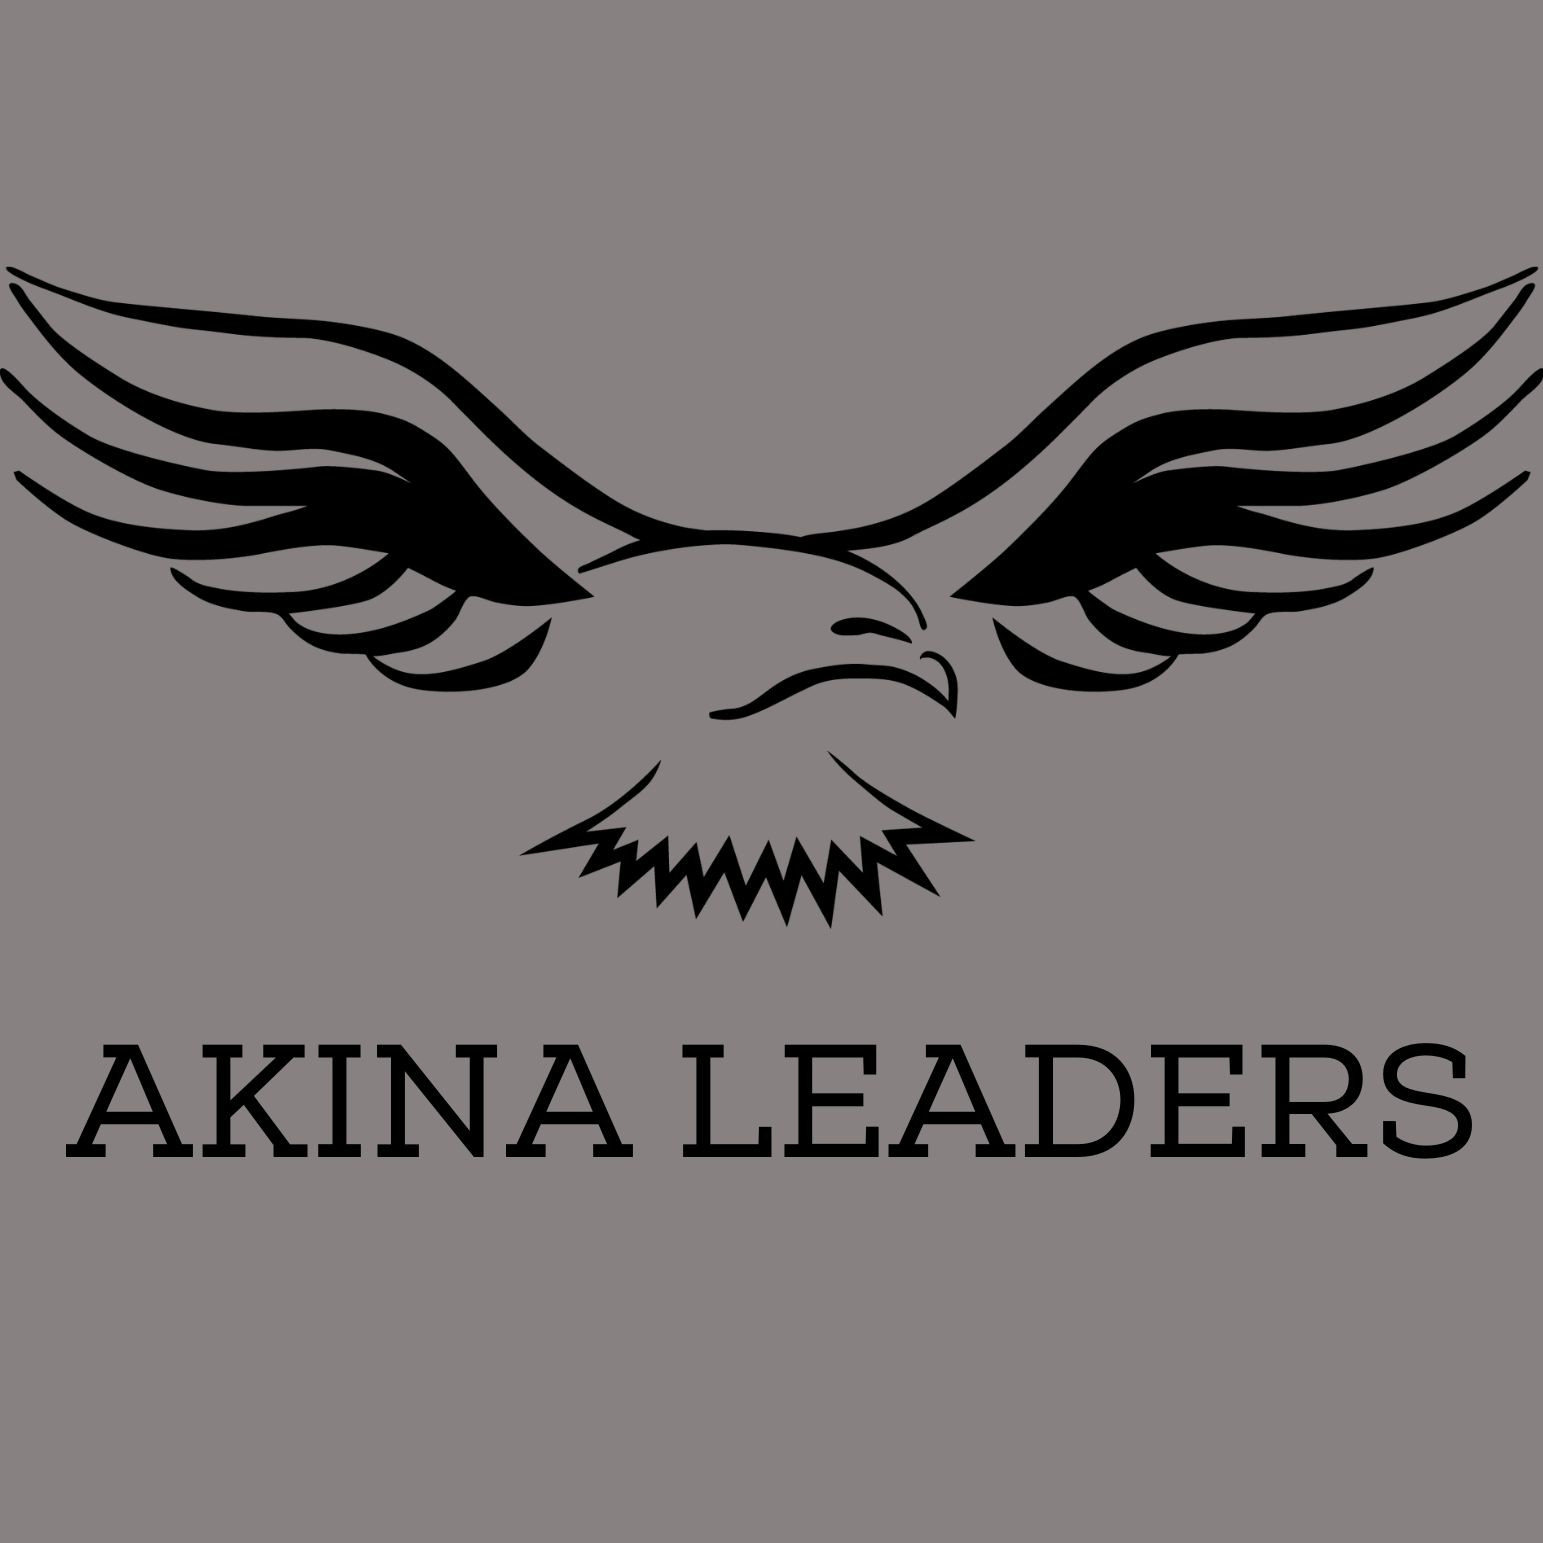 Ākina Leaders